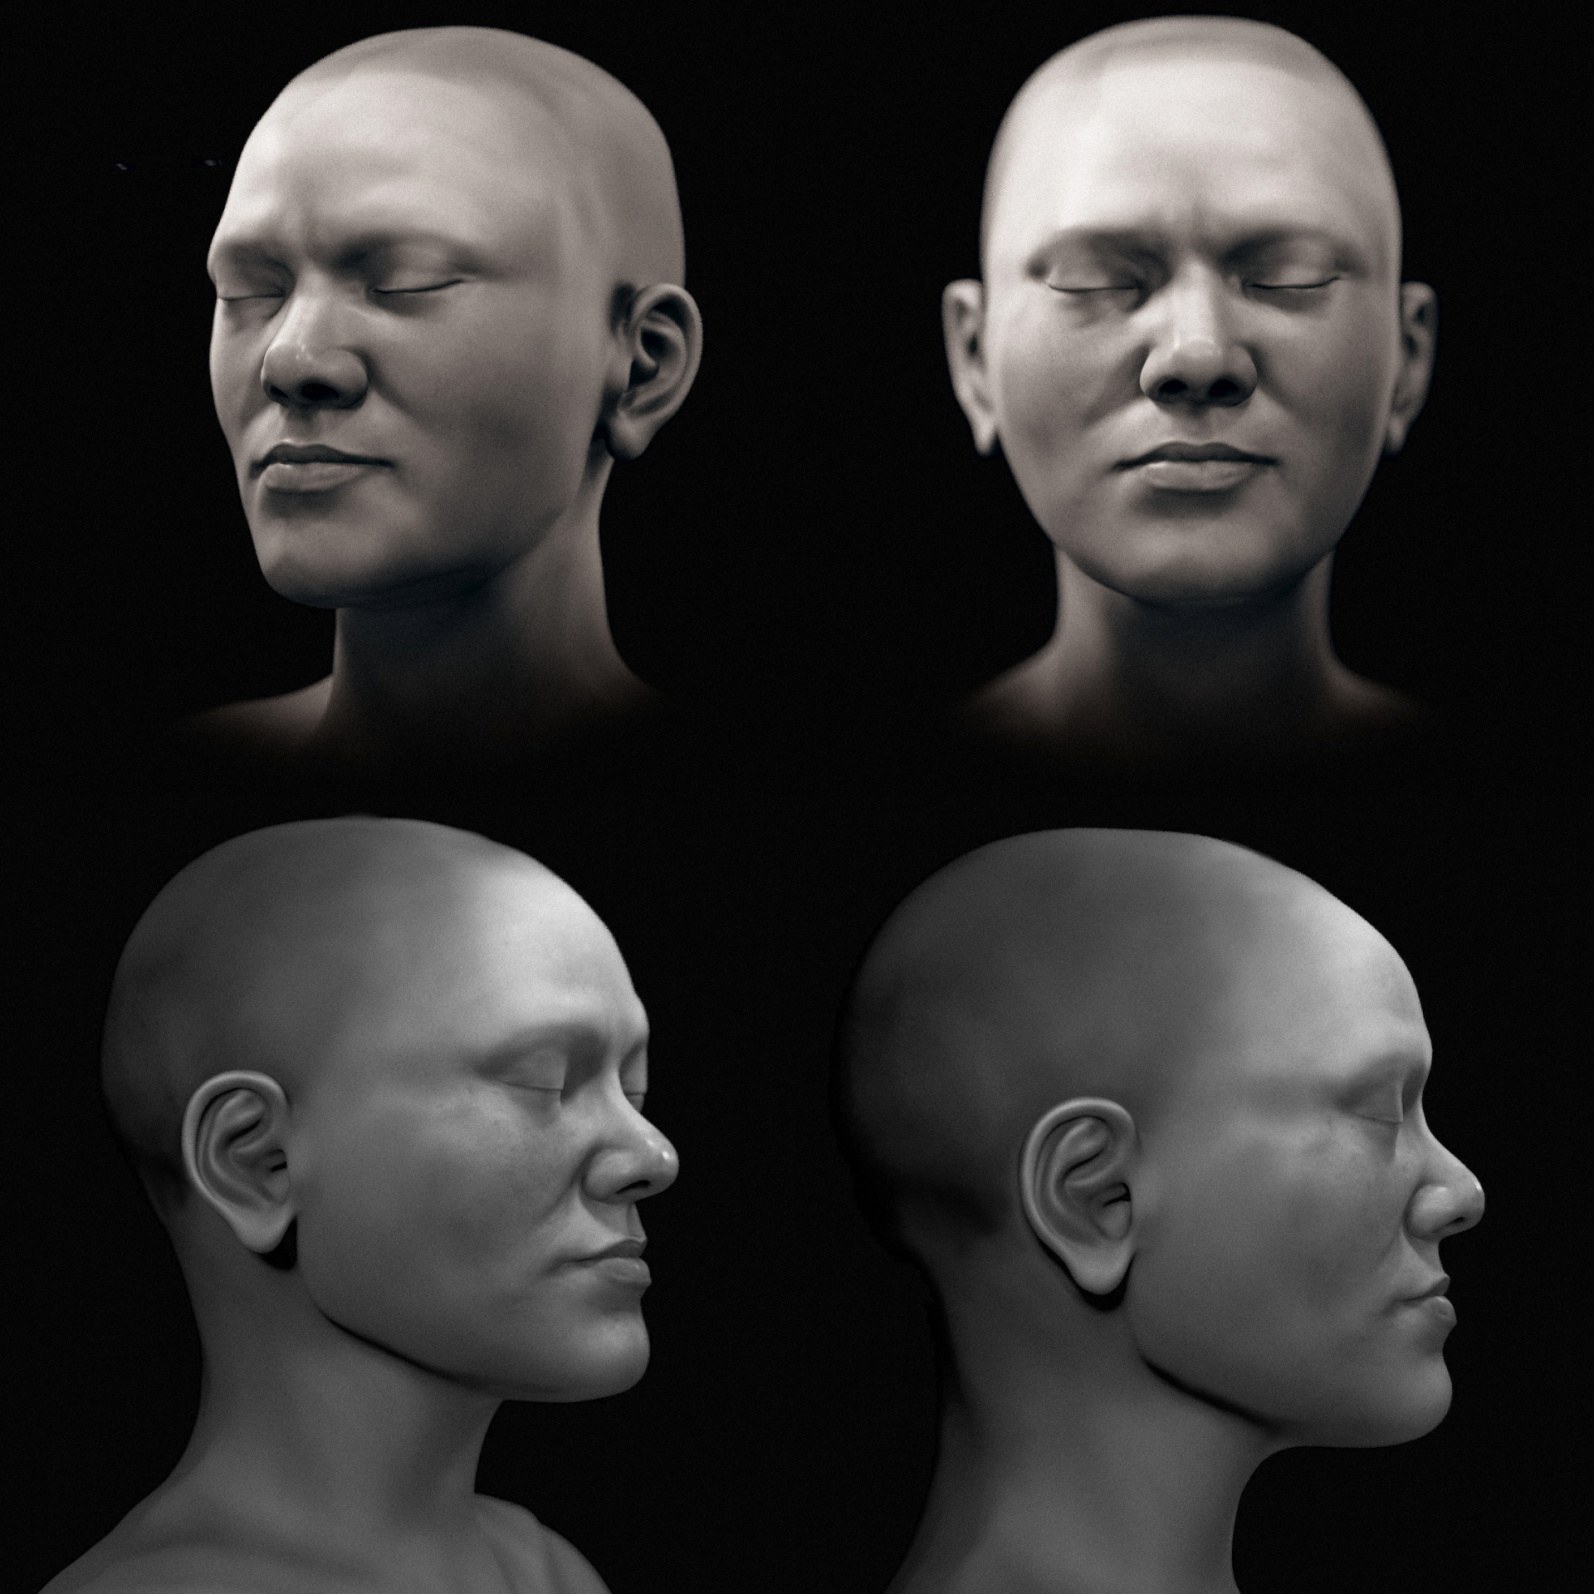 Una versione in bianco e nero dell'approssimazione facciale.